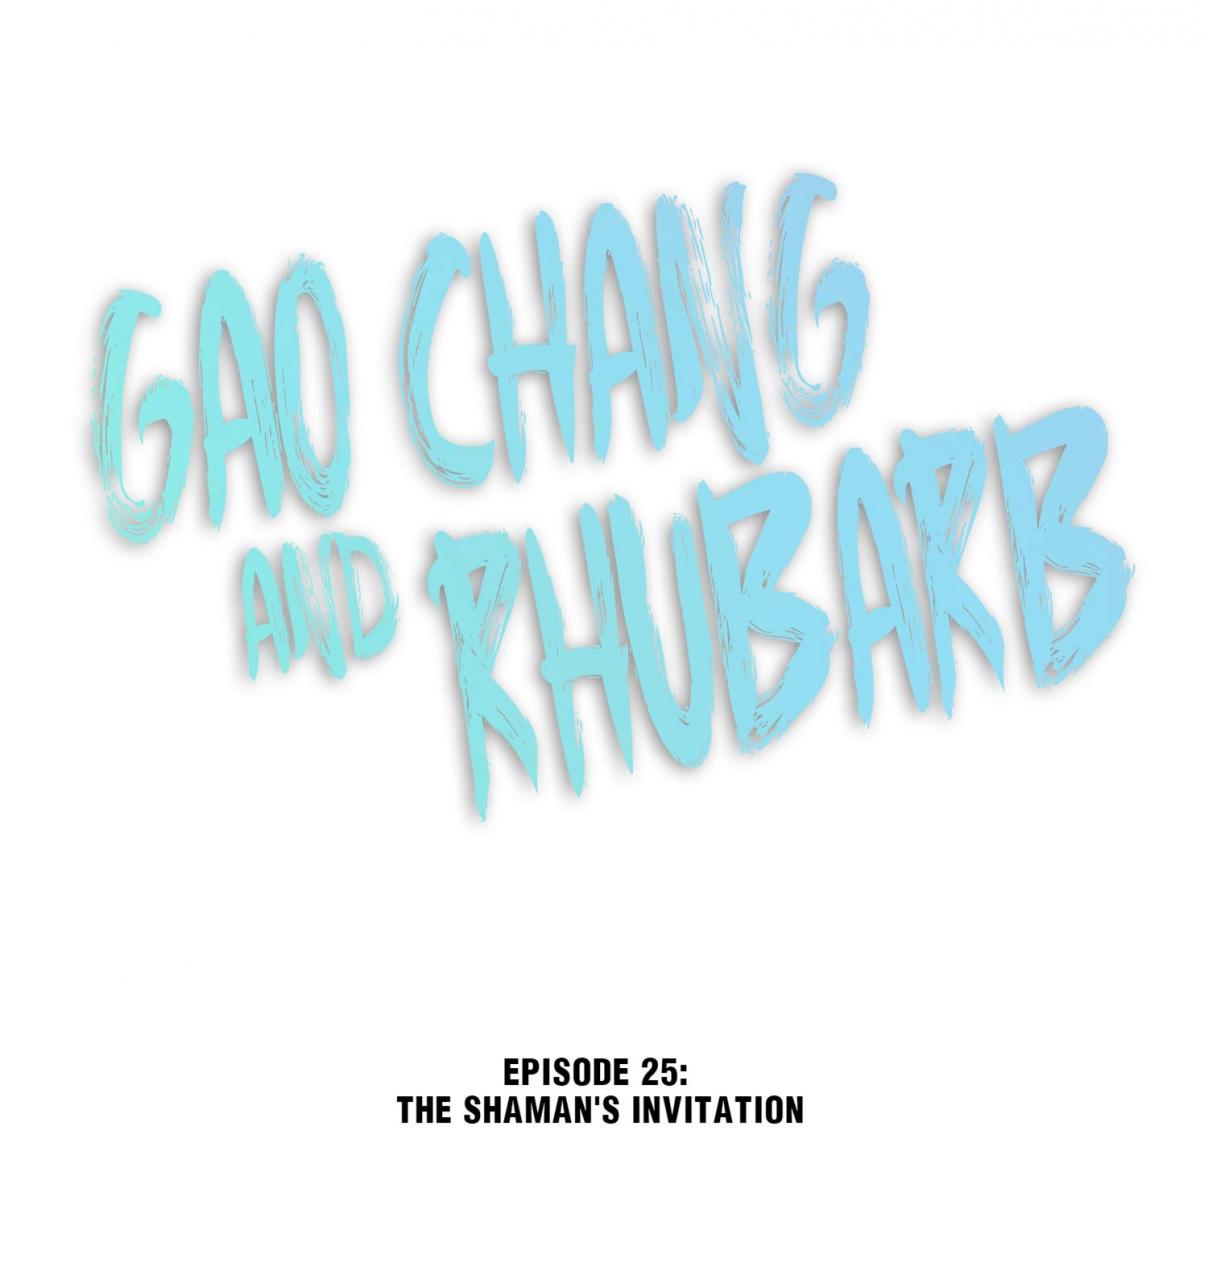 Gao Chang and Rhubarb 25